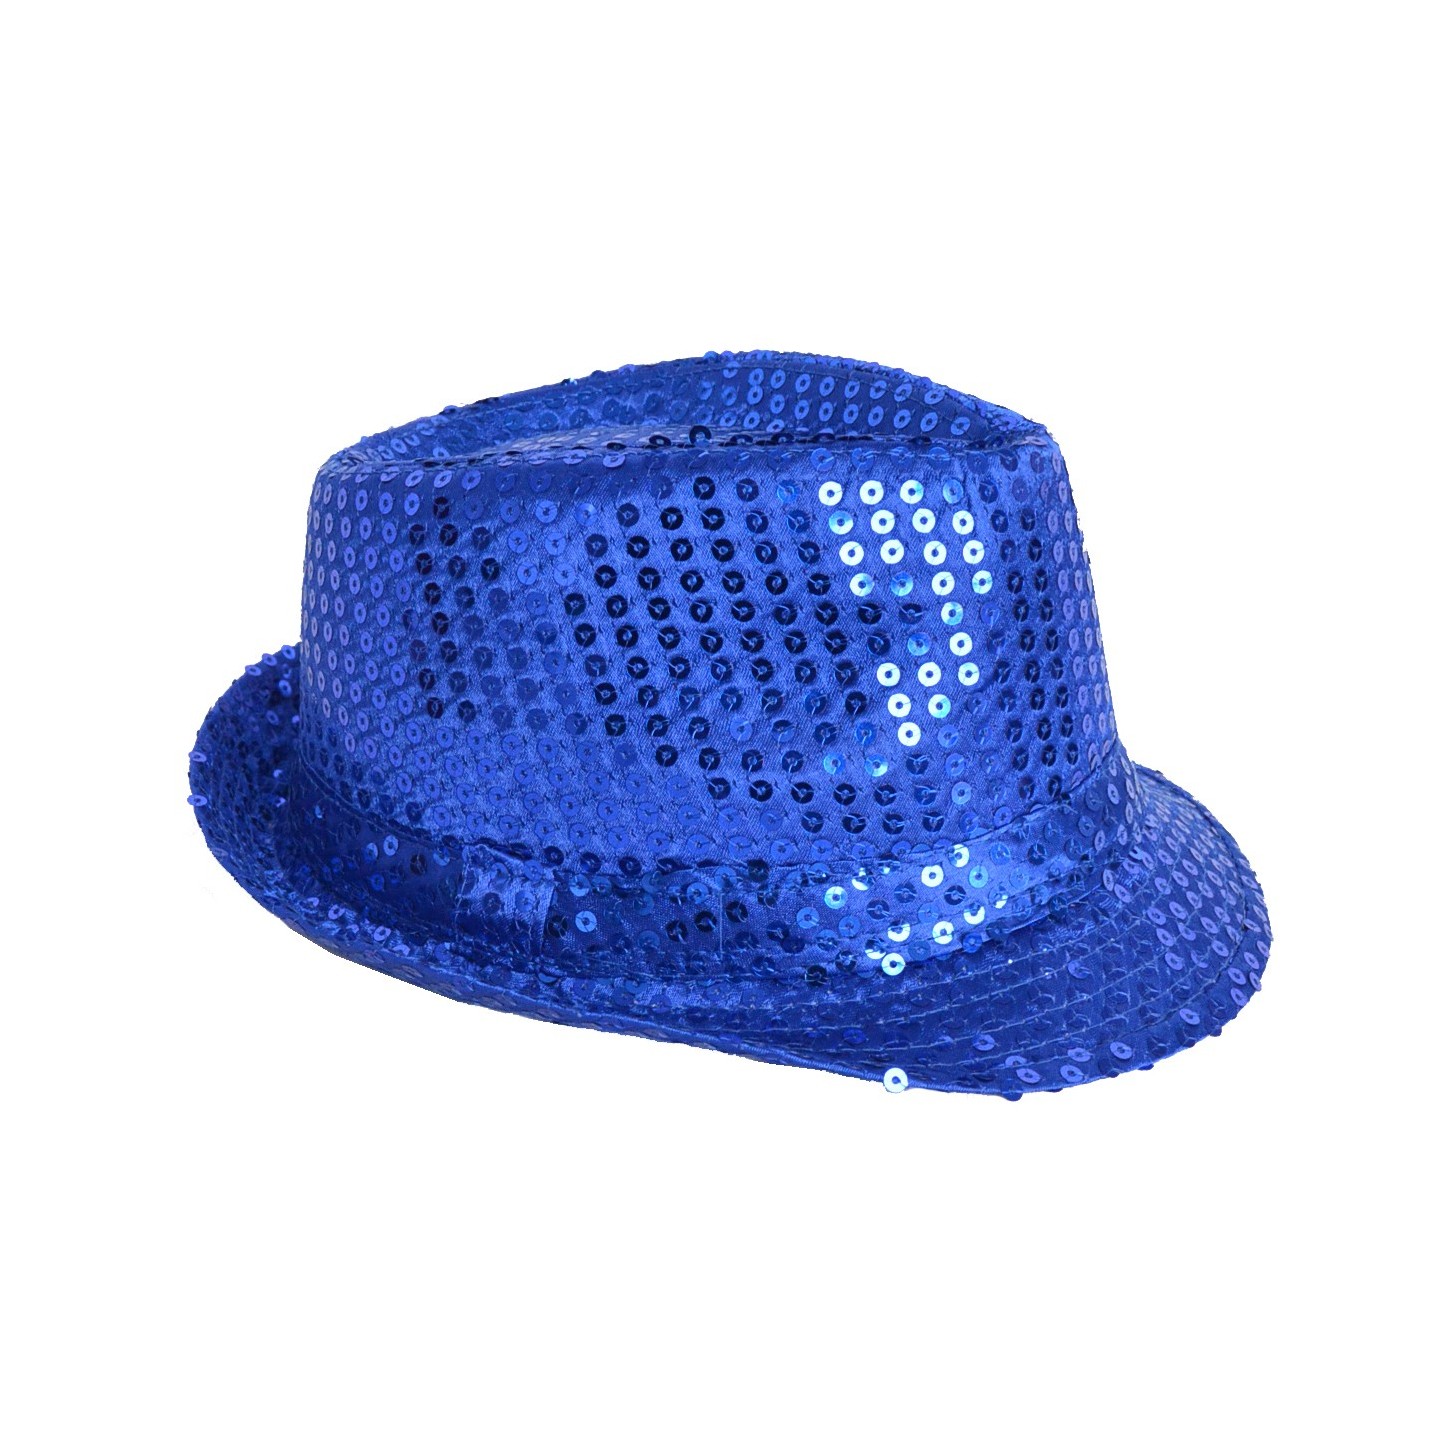 disco glitterhoed blauwe pailletten hoed